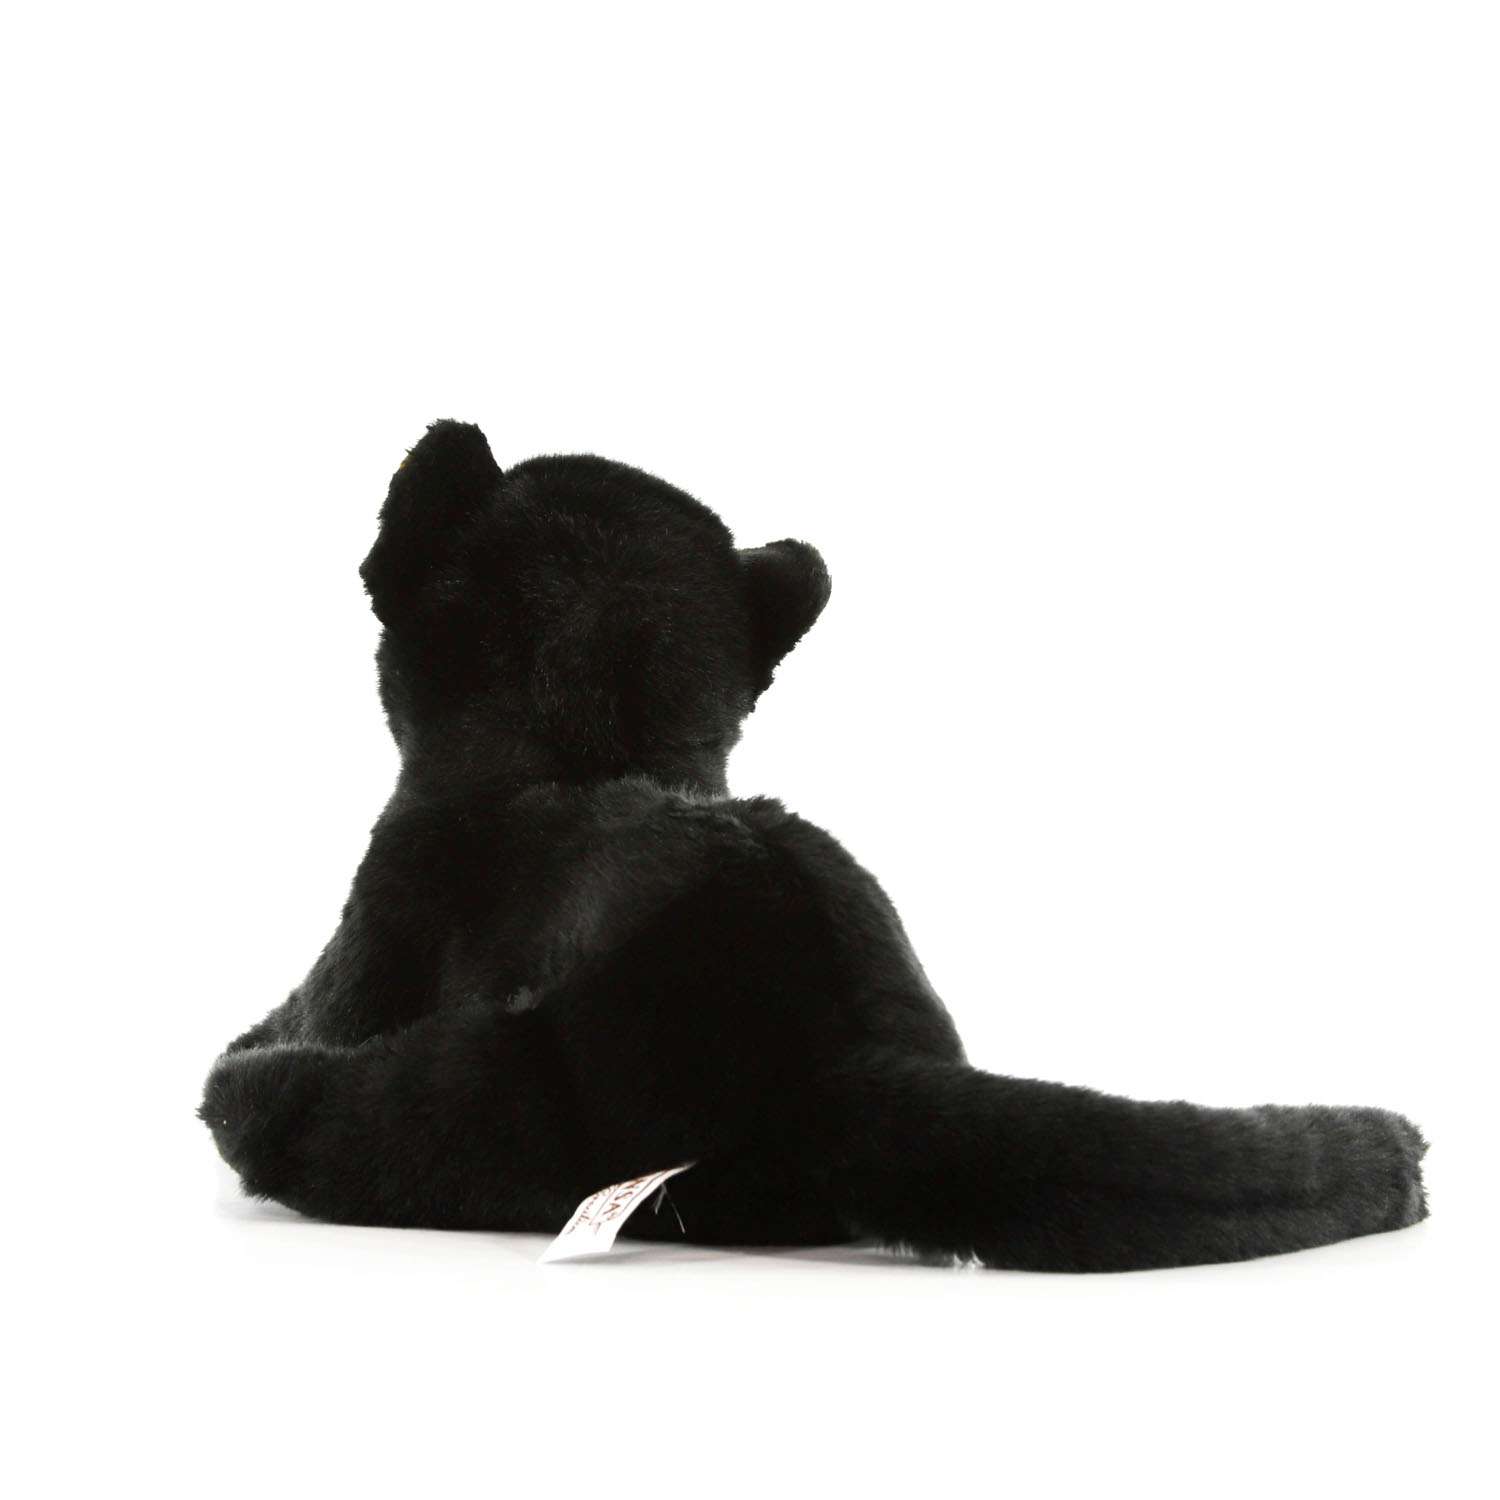 Реалистичная мягкая игрушка Hansa Детеныш черной пантеры 26 см - фото 5